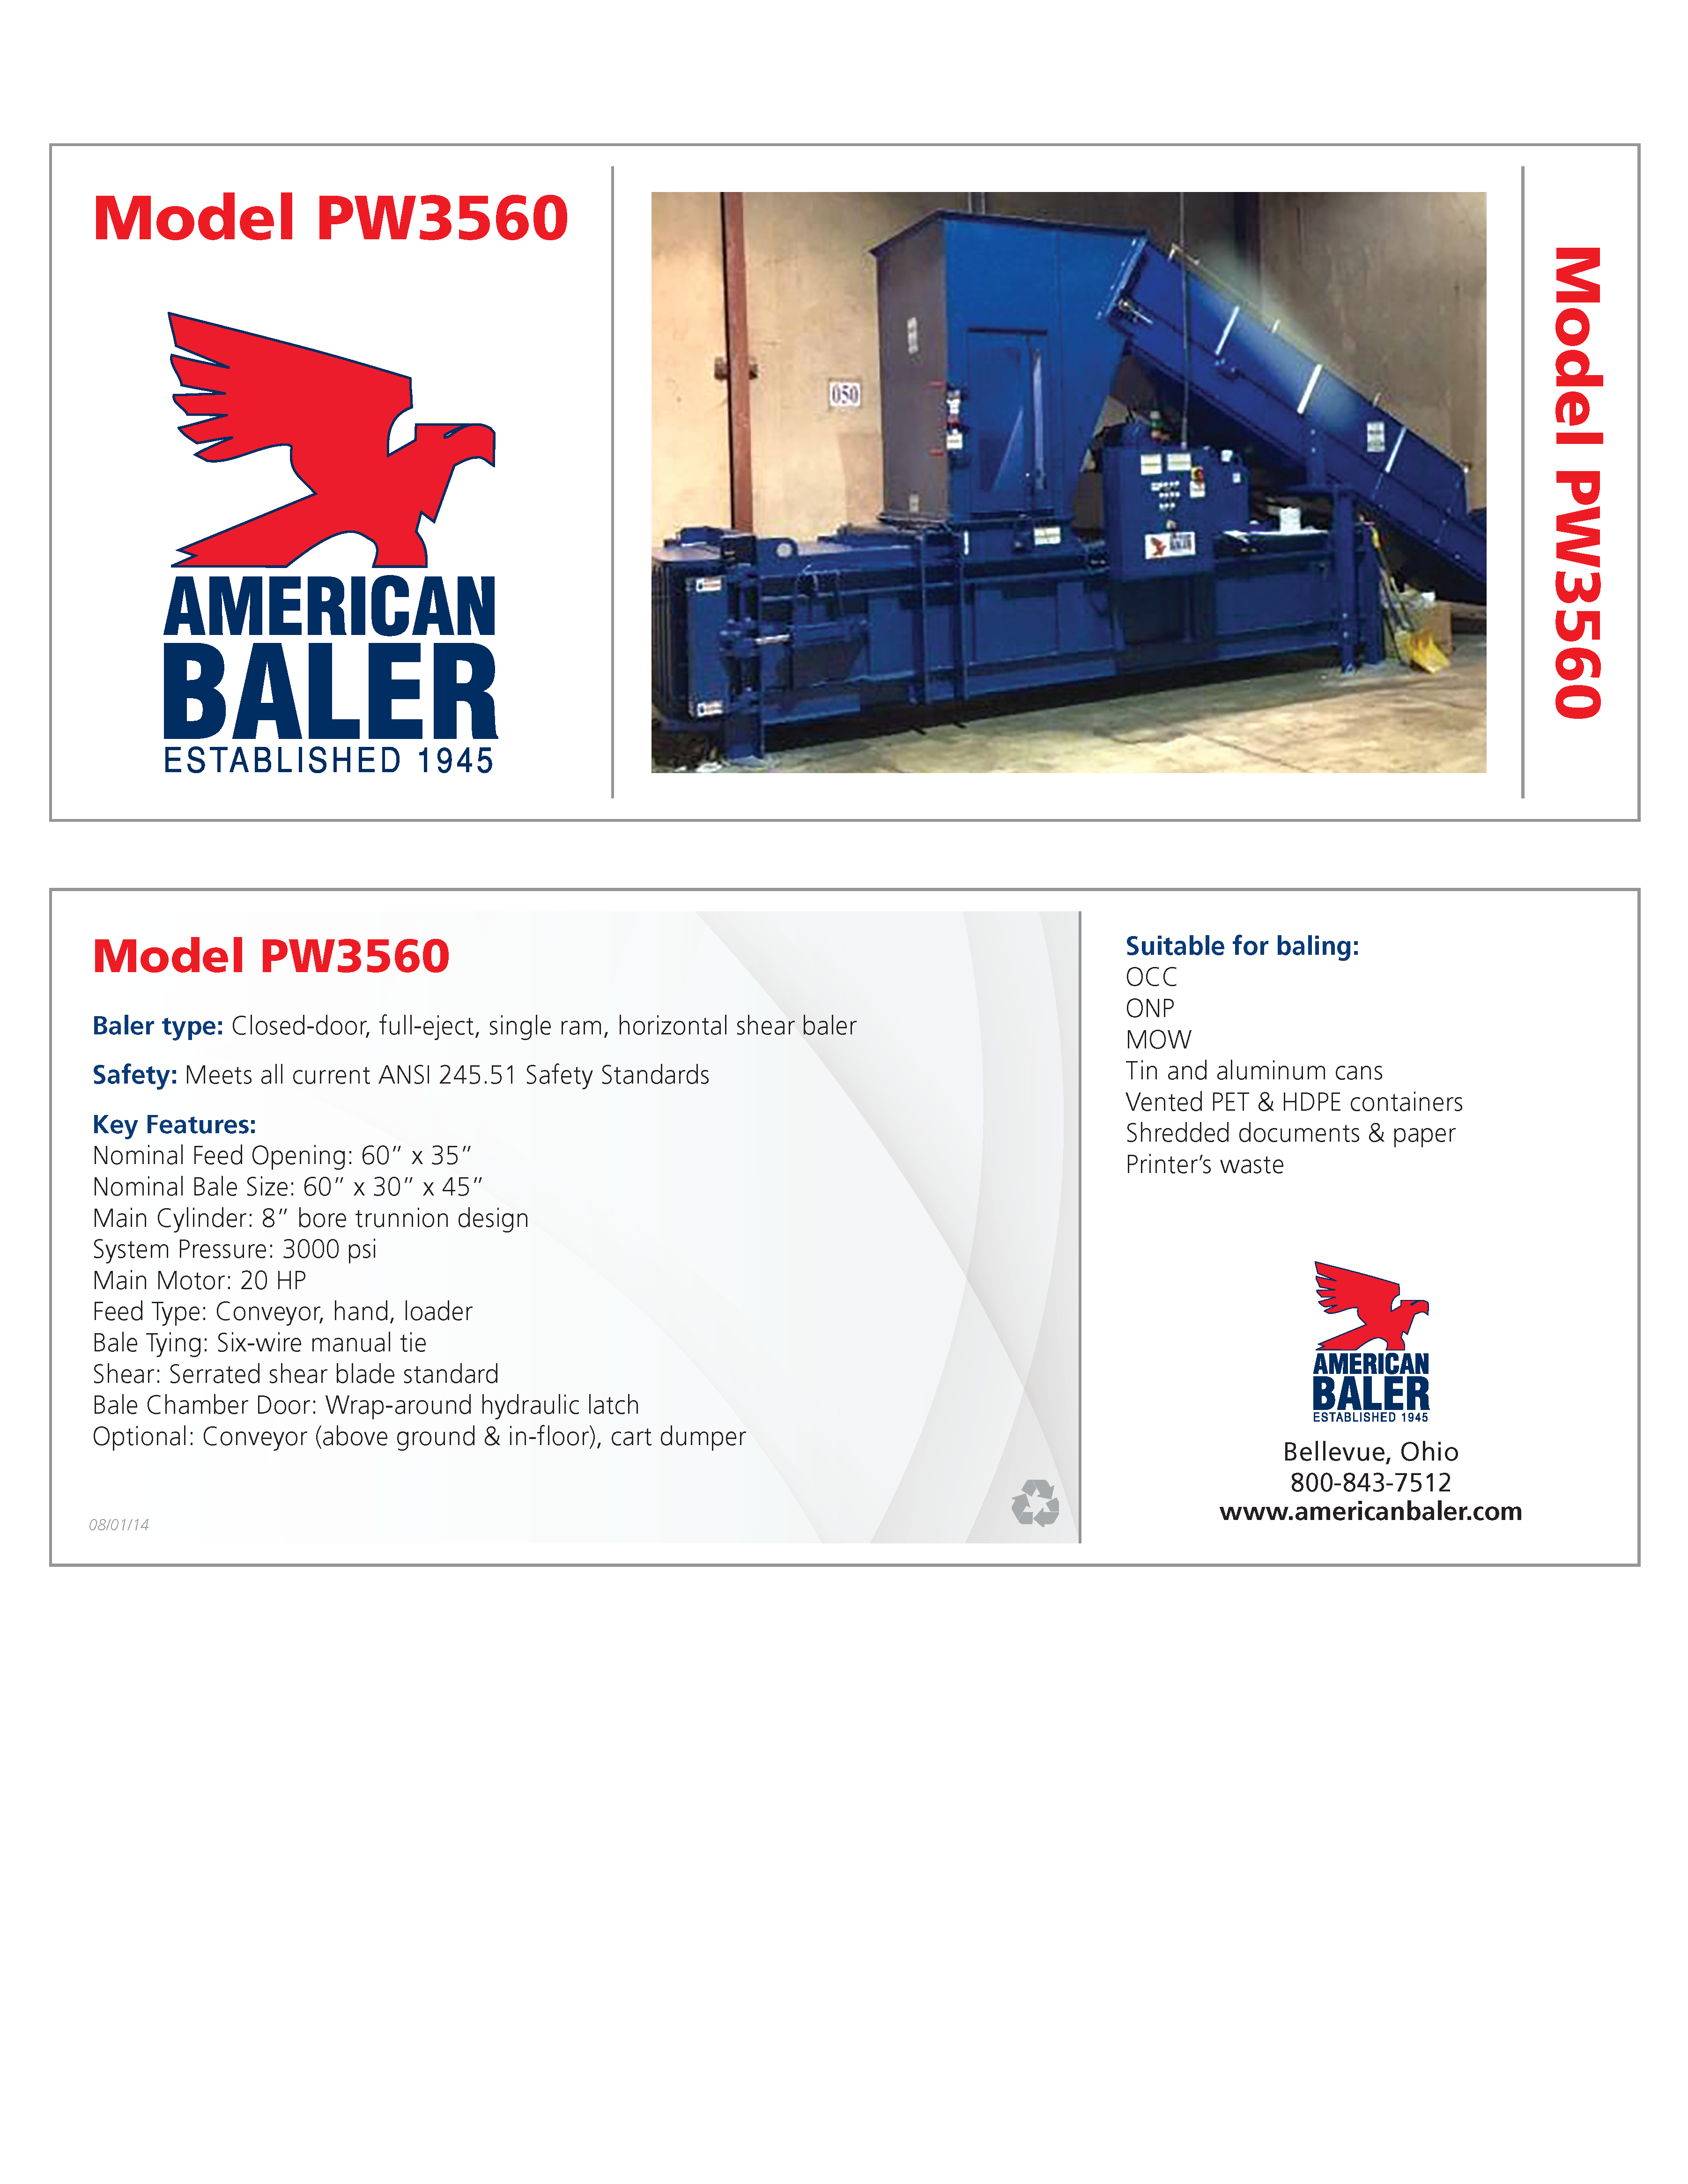 Conozca más acerca de la compactadora Predator PW3560 de Expulsión Total y Amarre Manual en el folleto de American Baler.